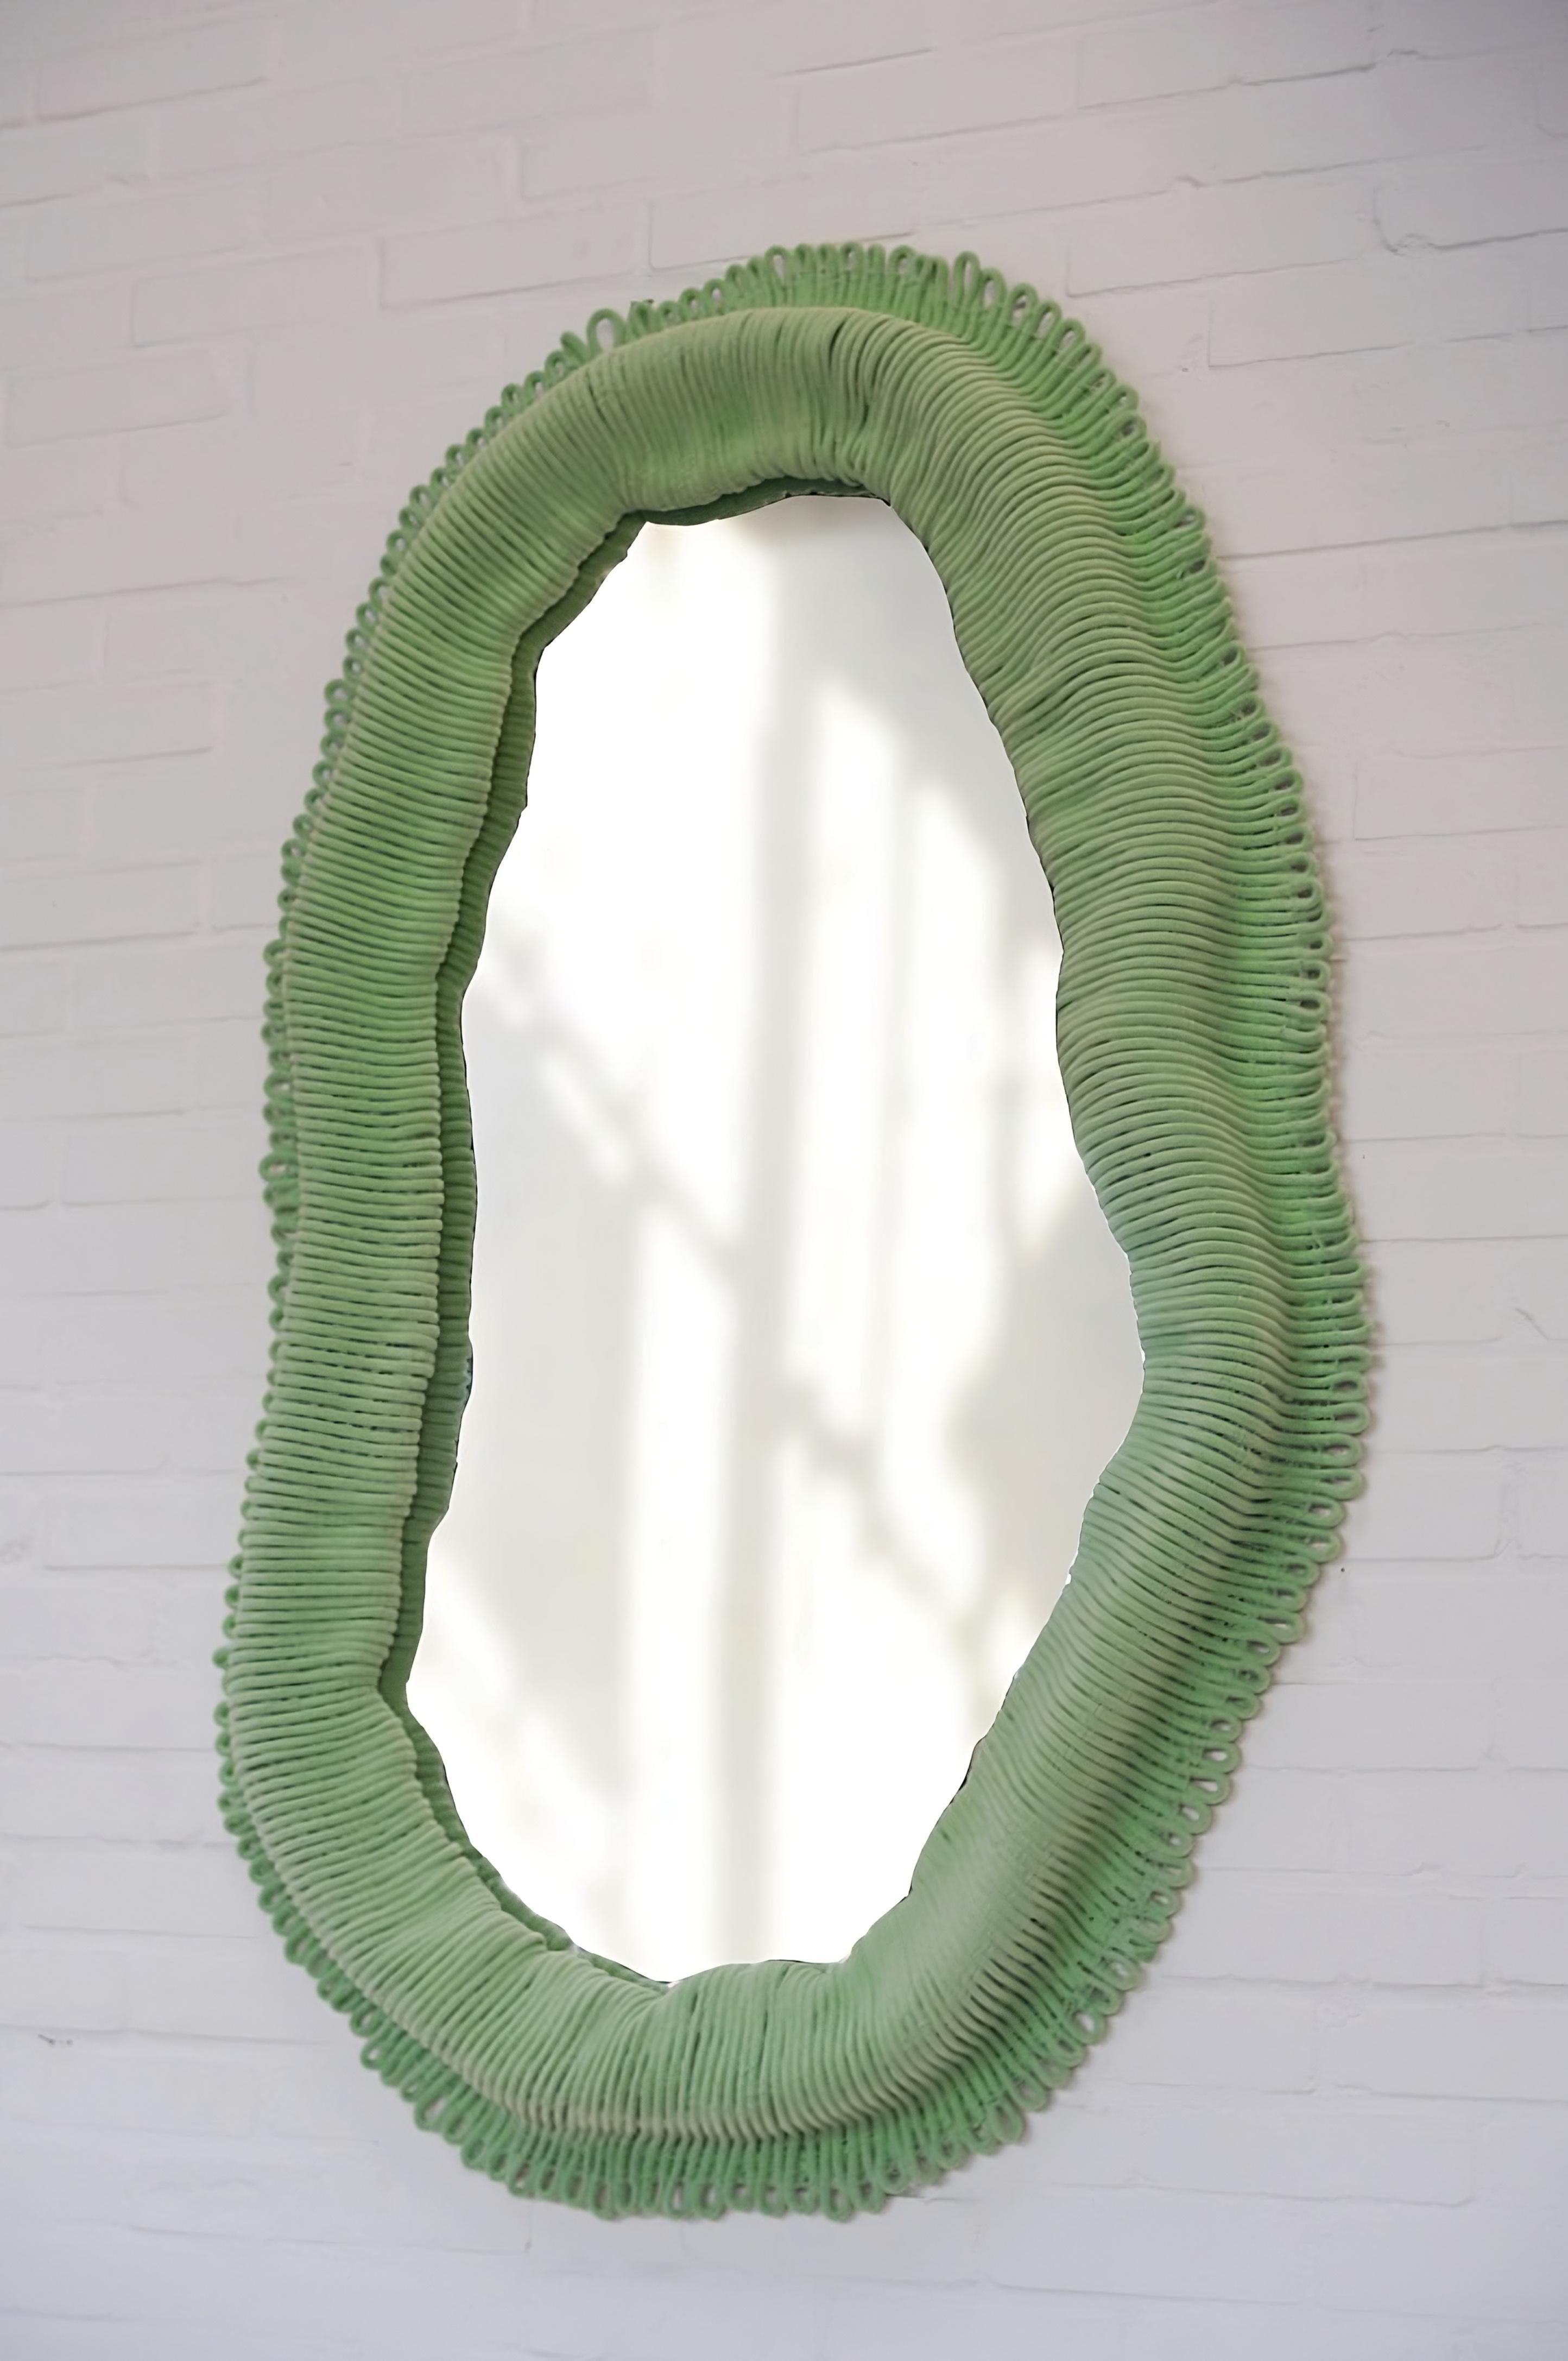 Contemporary Green Wall Mirror Cynarina by Sarah Roseman 2